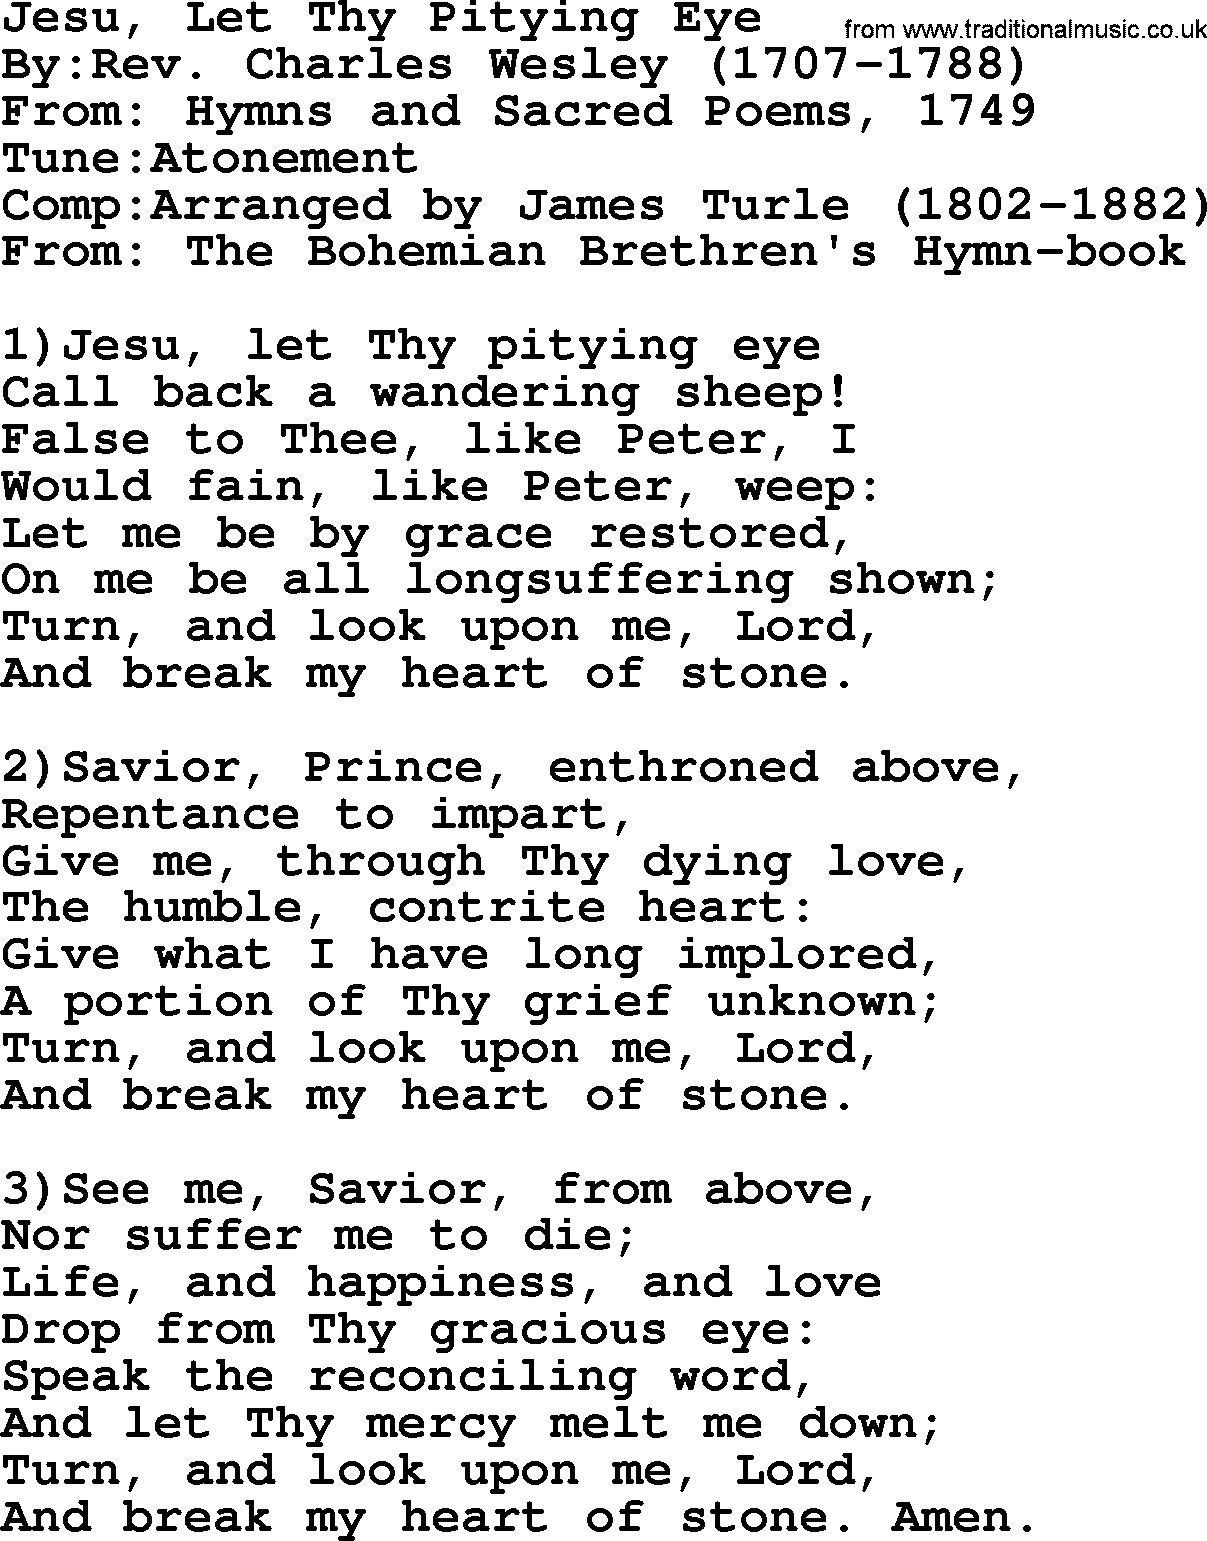 Methodist Hymn: Jesu, Let Thy Pitying Eye, lyrics